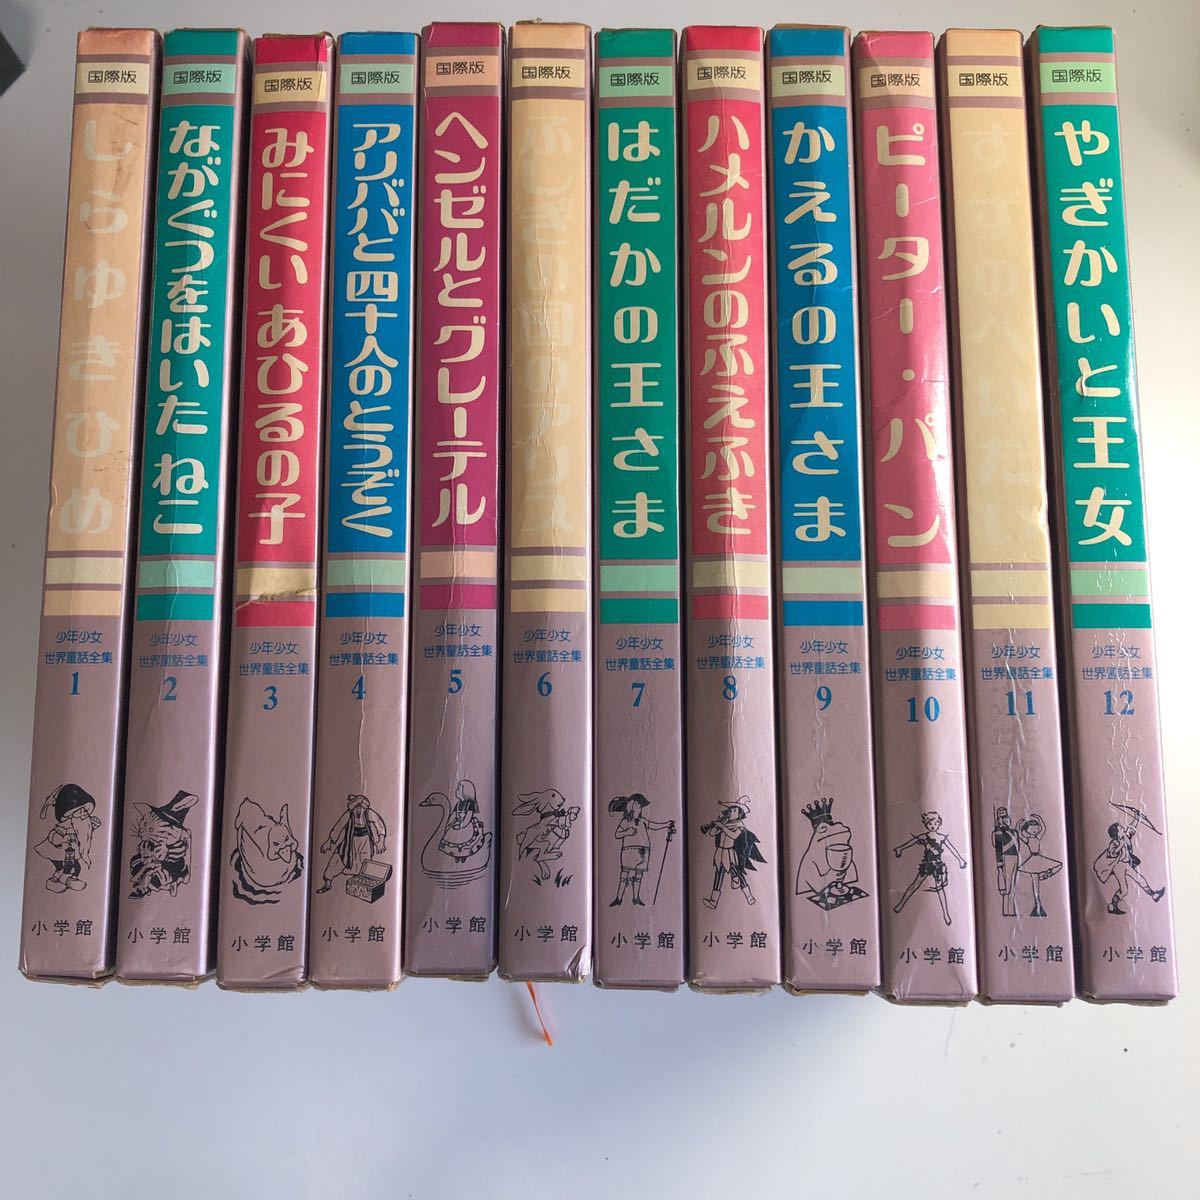 Y角7 国際版 少年少女 世界童話全集 全20巻 + 別巻3巻 合計 23冊 全巻